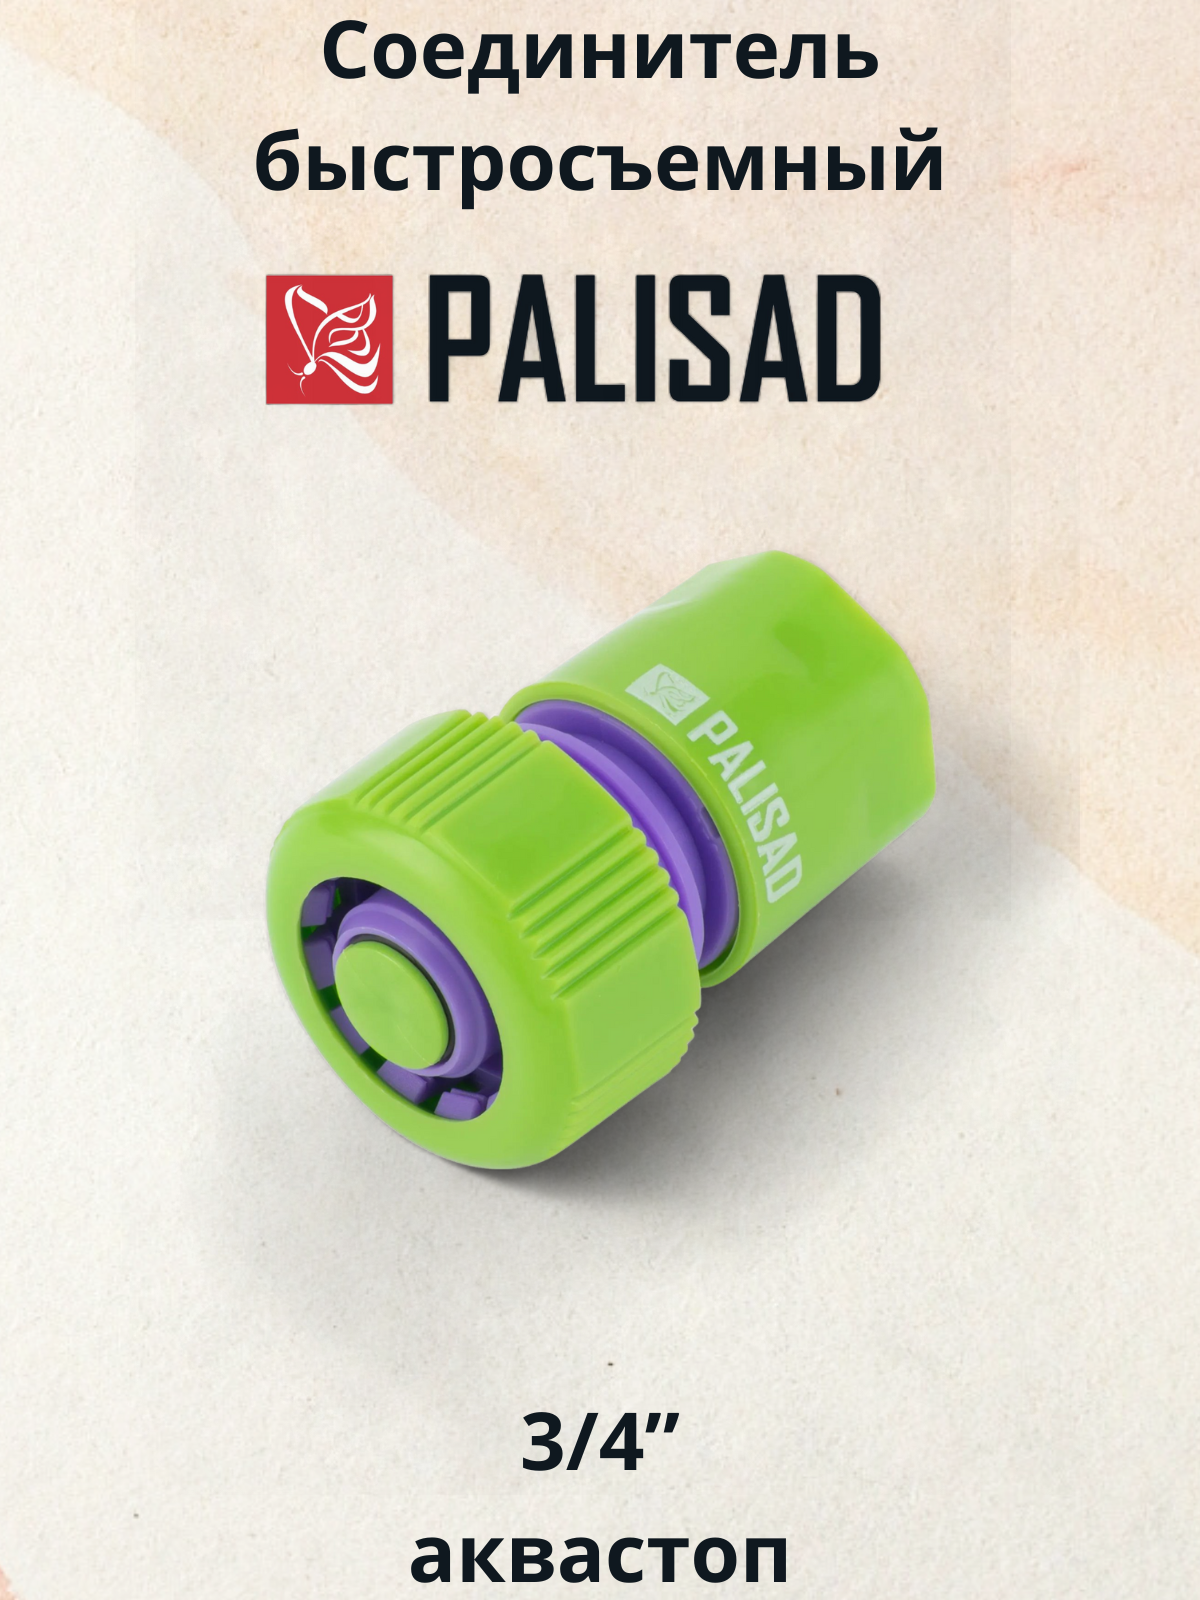 Пластмассовый быстросъемный соединитель для шланга PALISAD - фото №17